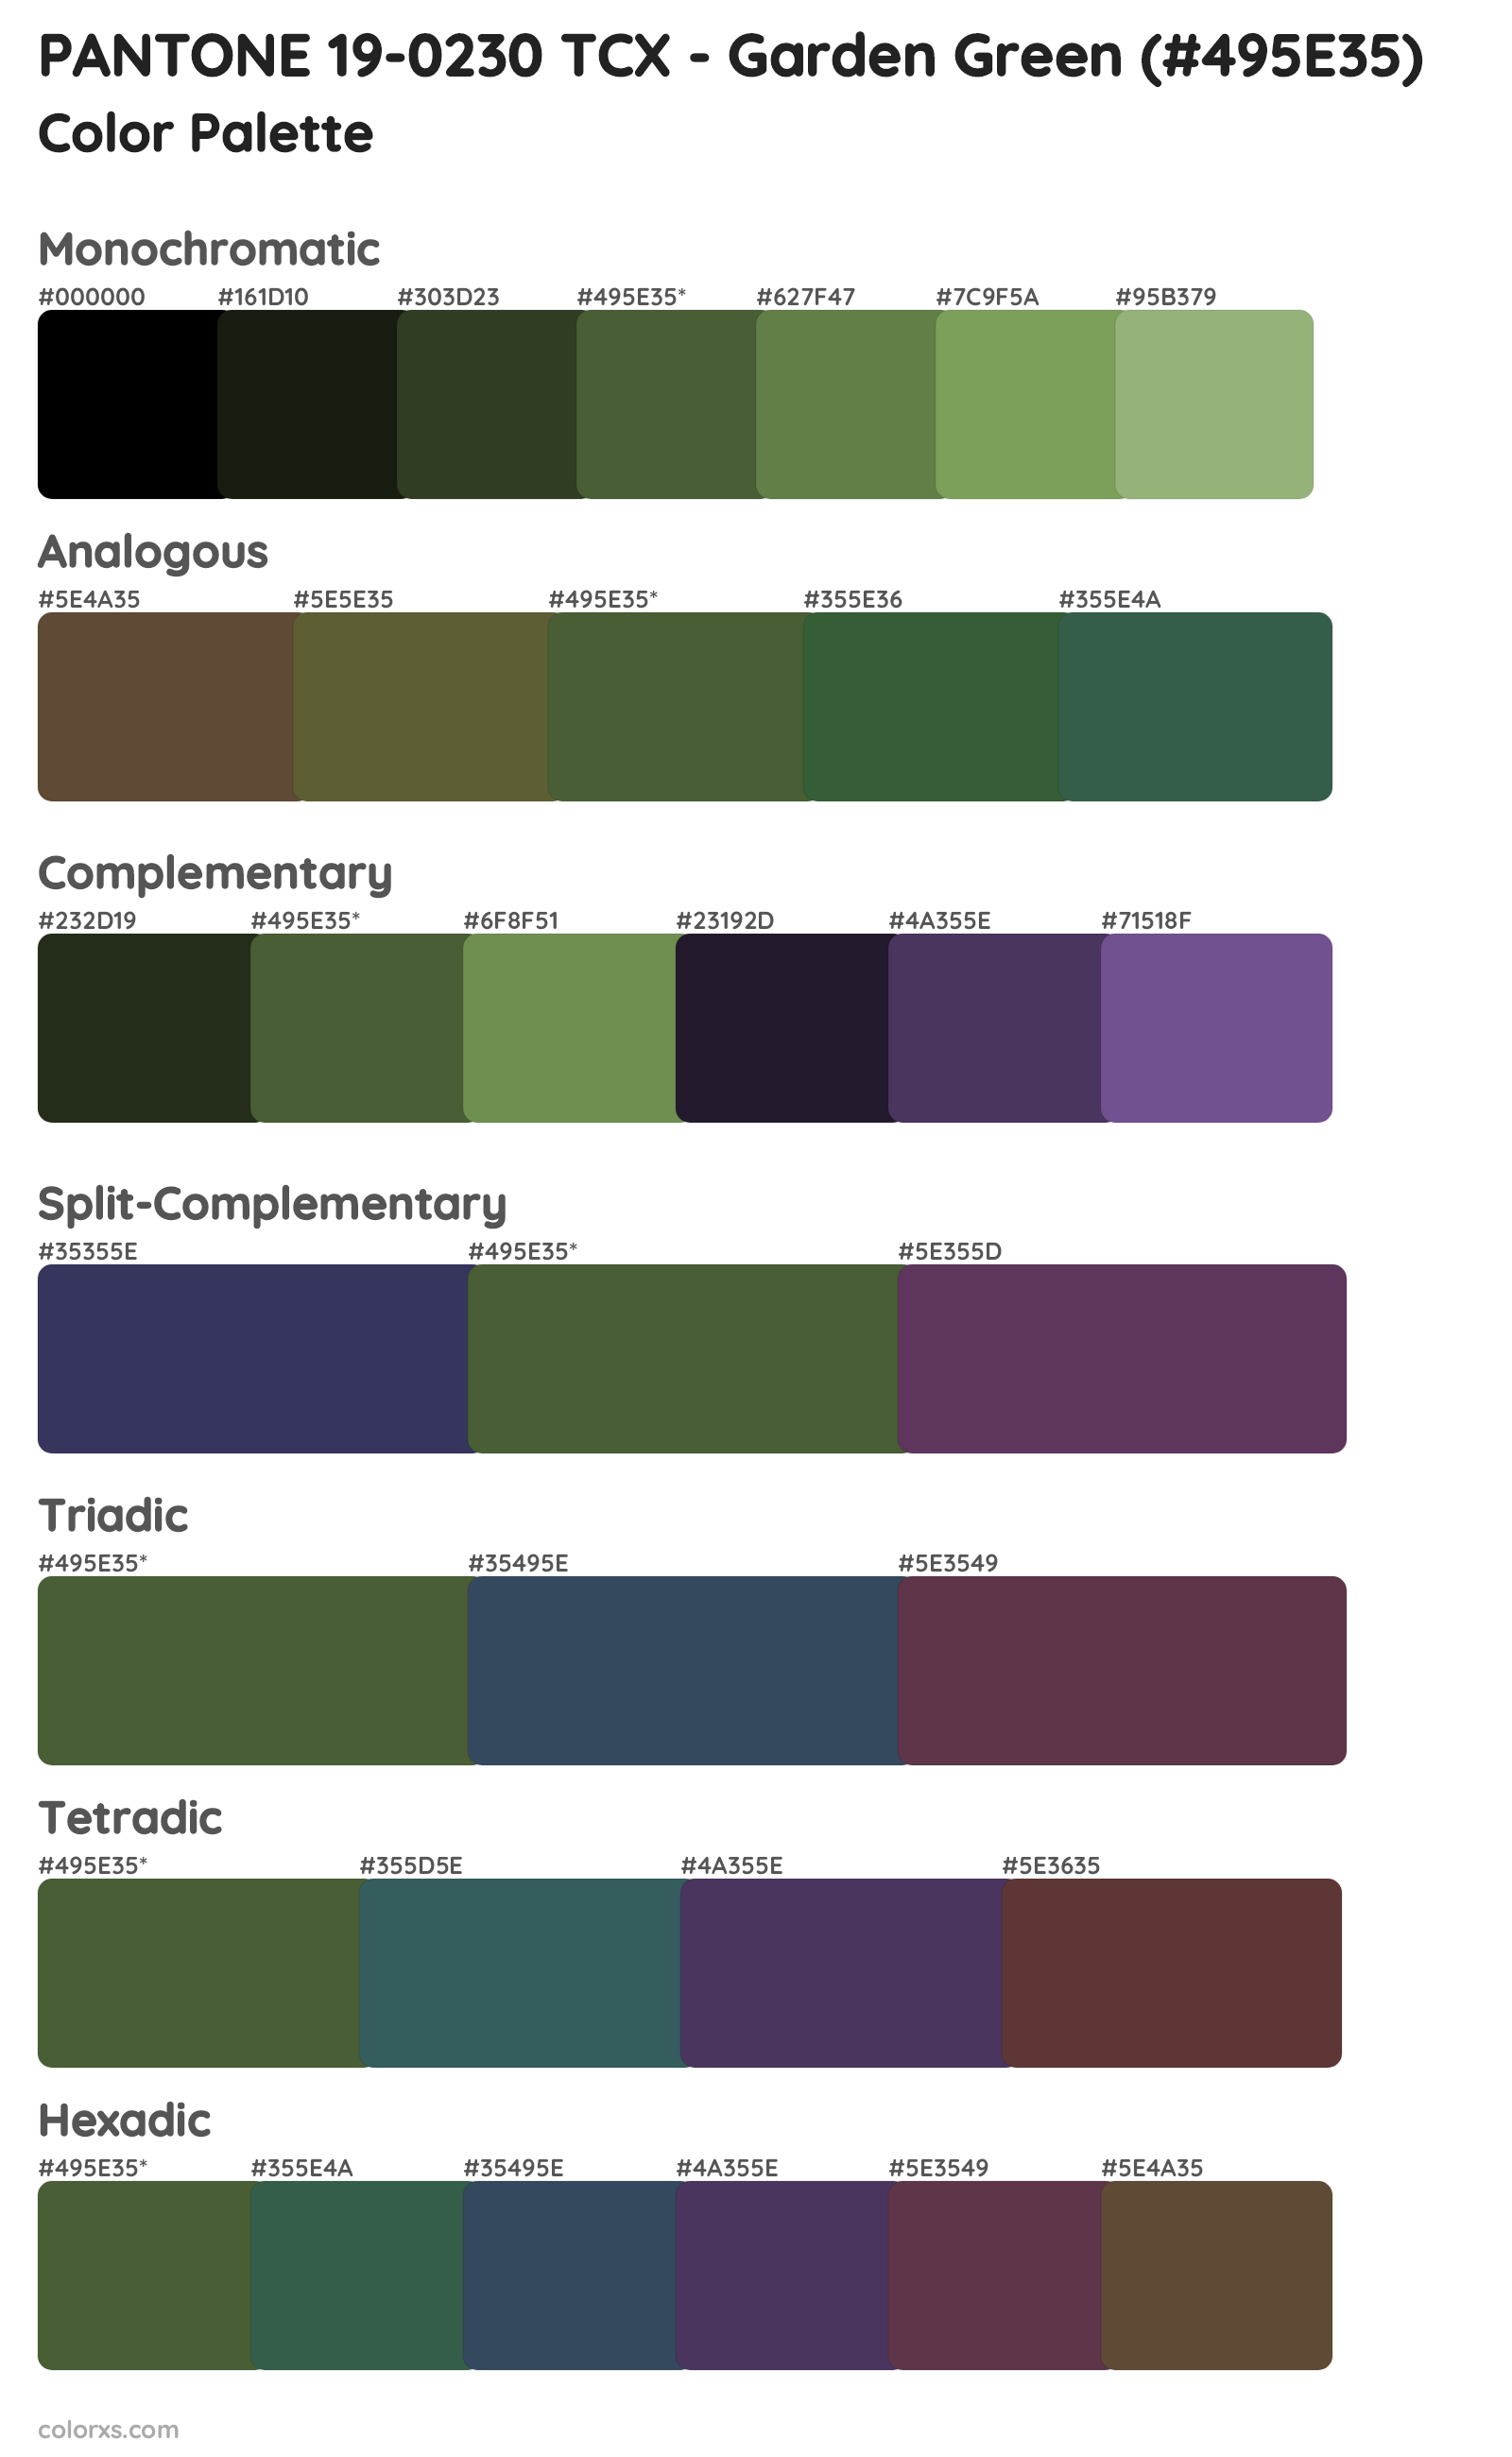 PANTONE 19-0230 TCX - Garden Green Color Scheme Palettes